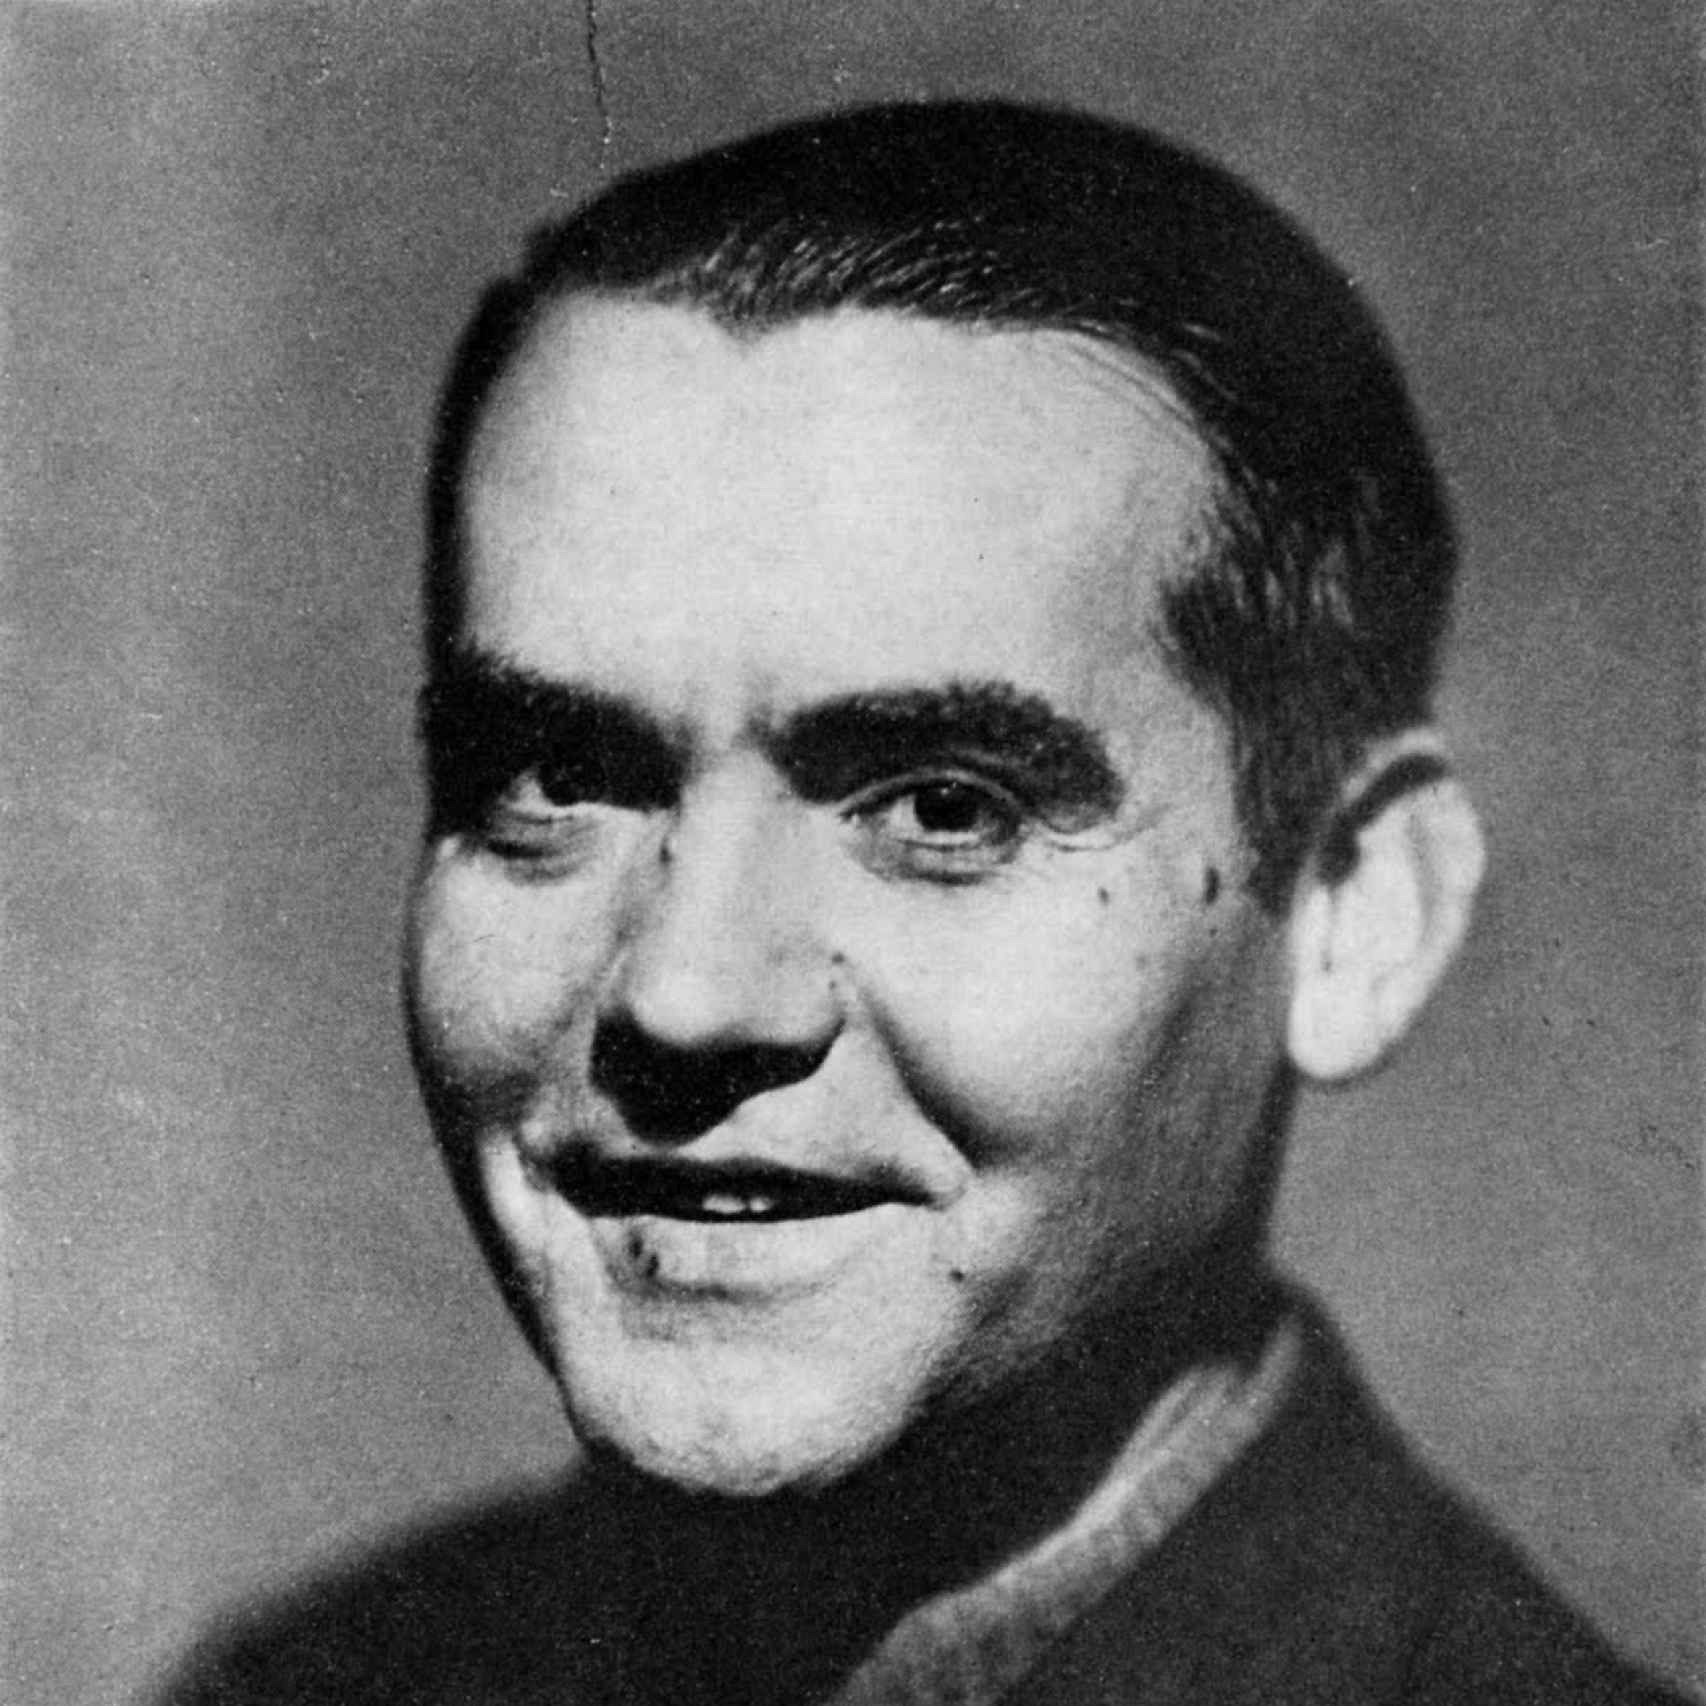 Federico García Lorca, el poeta con el don de la expresión humana viva.